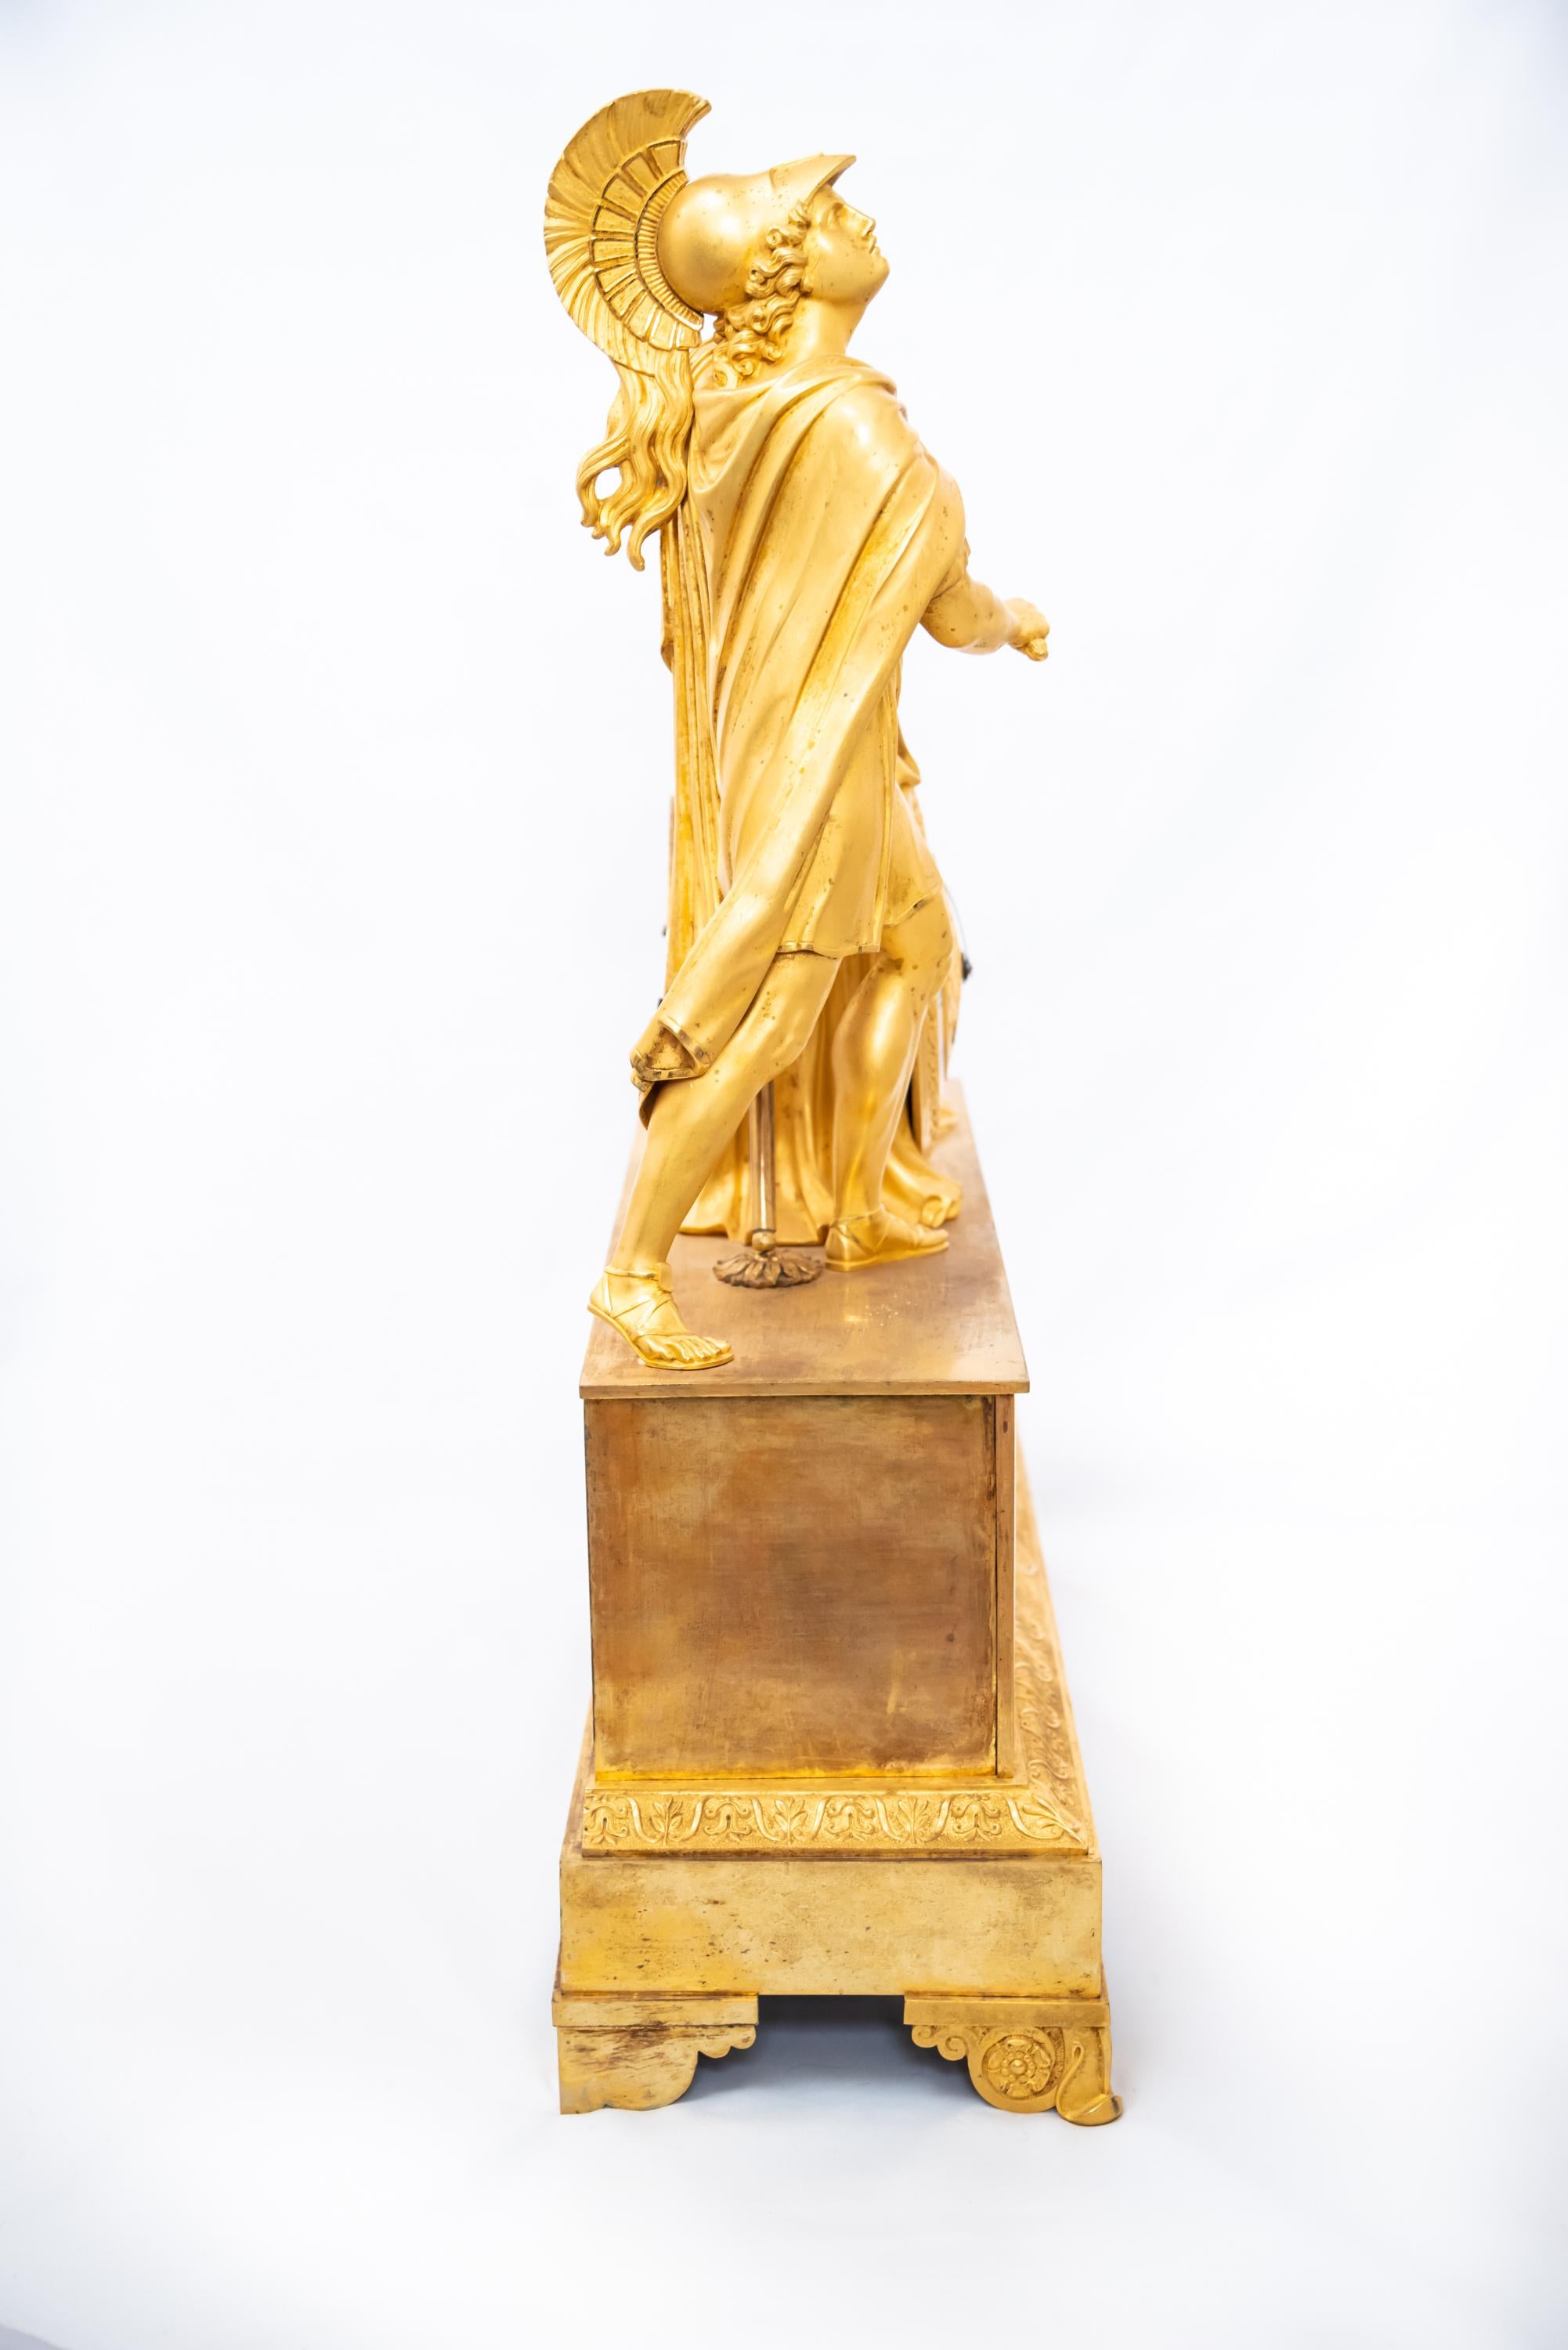 Pendule française en bronze doré au feu représentant un guerrier grec, époque Restauration, 1815-30. Le mécanisme à fil de soie est en bon état de fonctionnement avec la clé et le pendule.